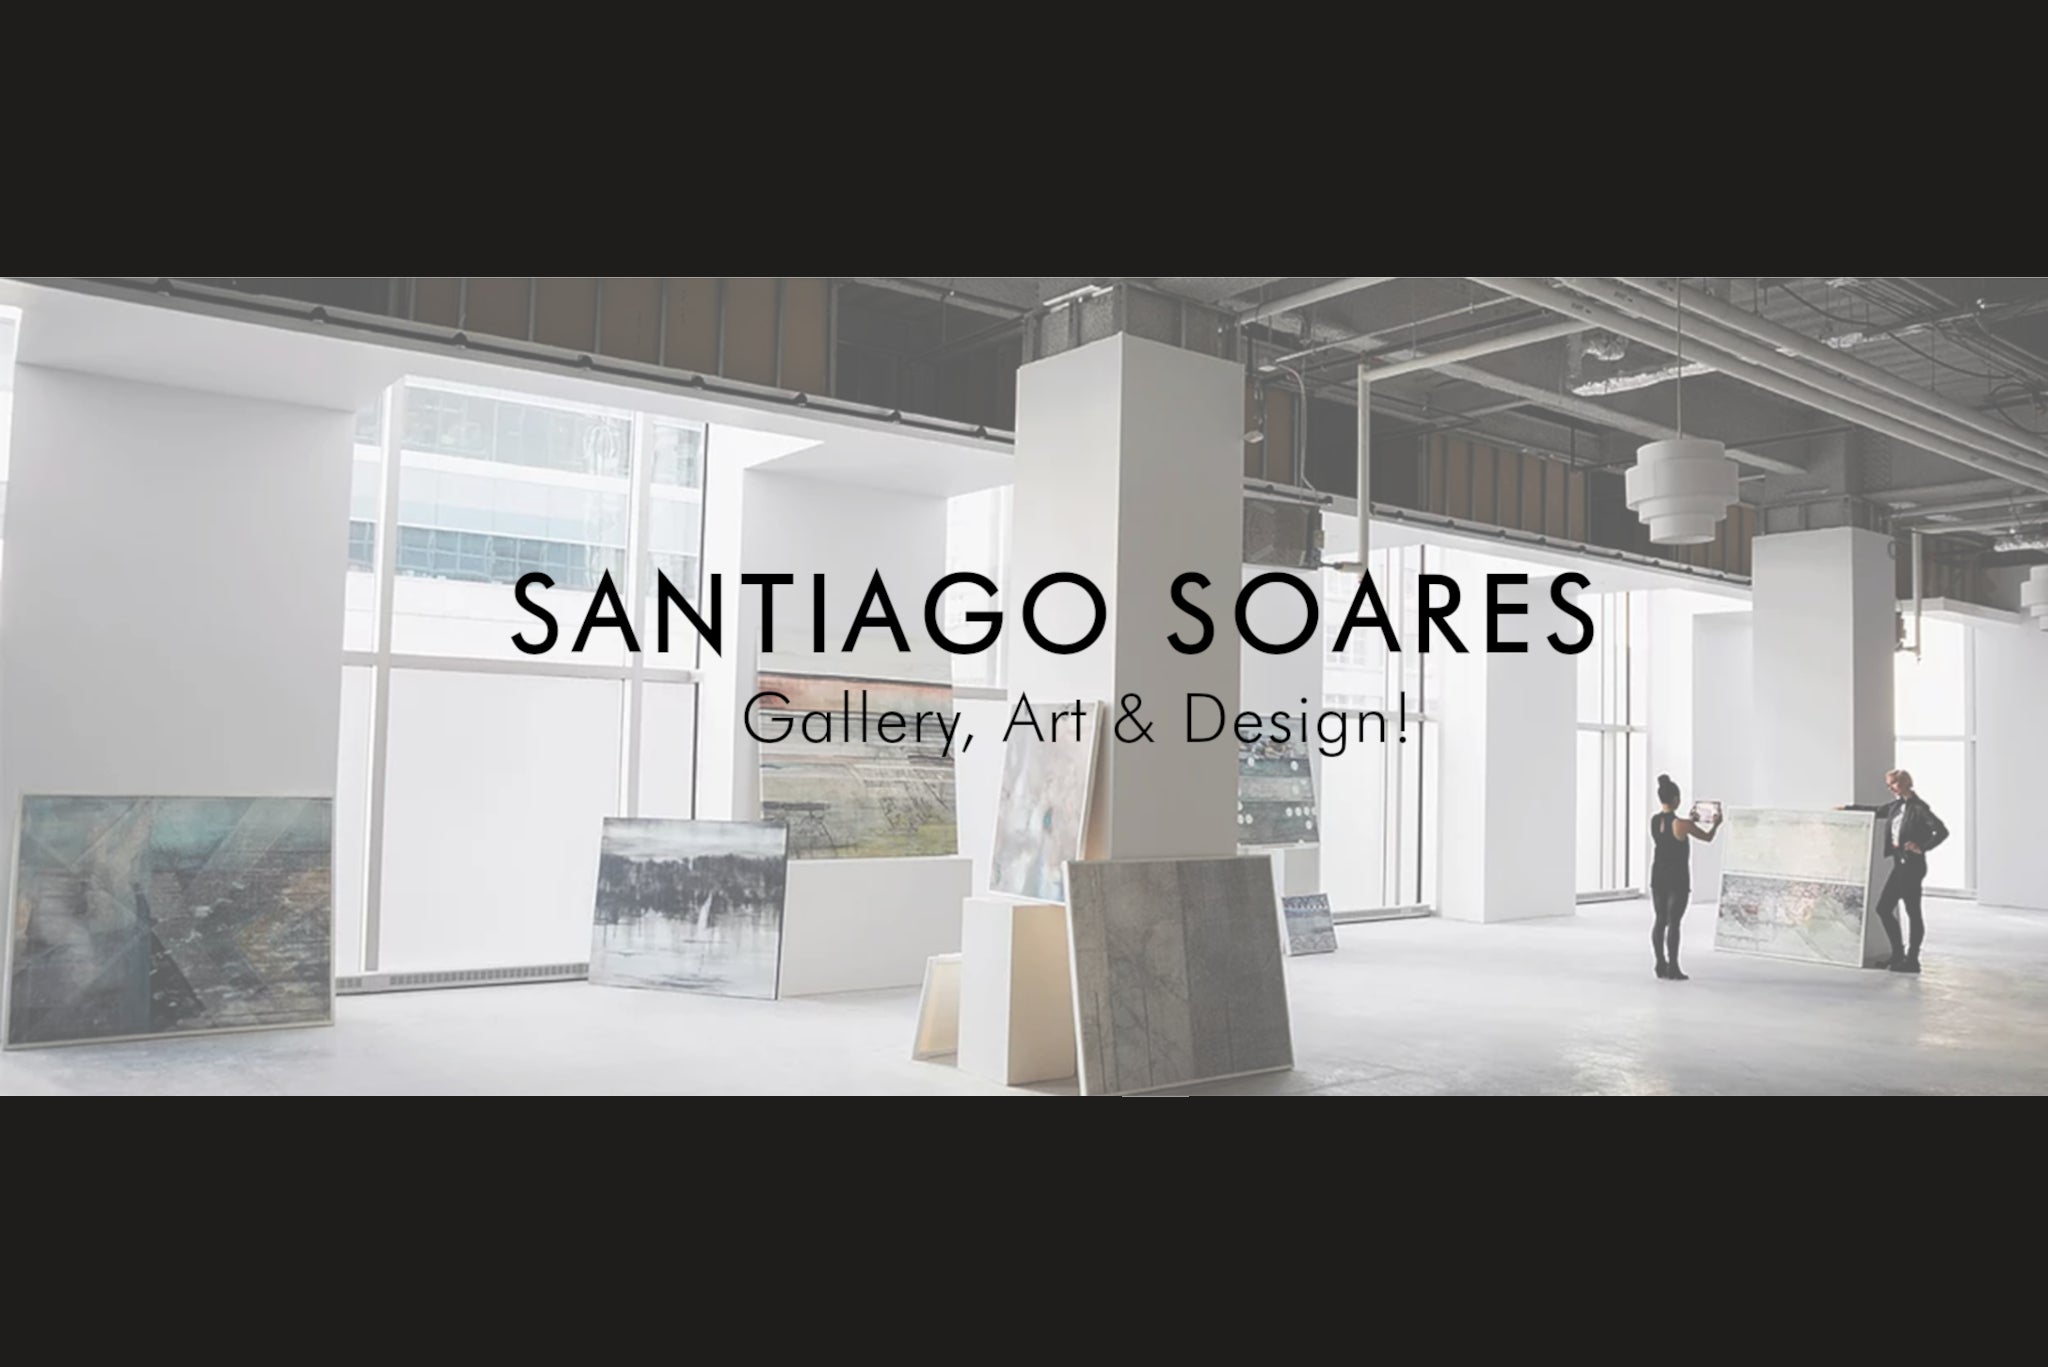 Load video: Santiago Soares Gallery Presentation